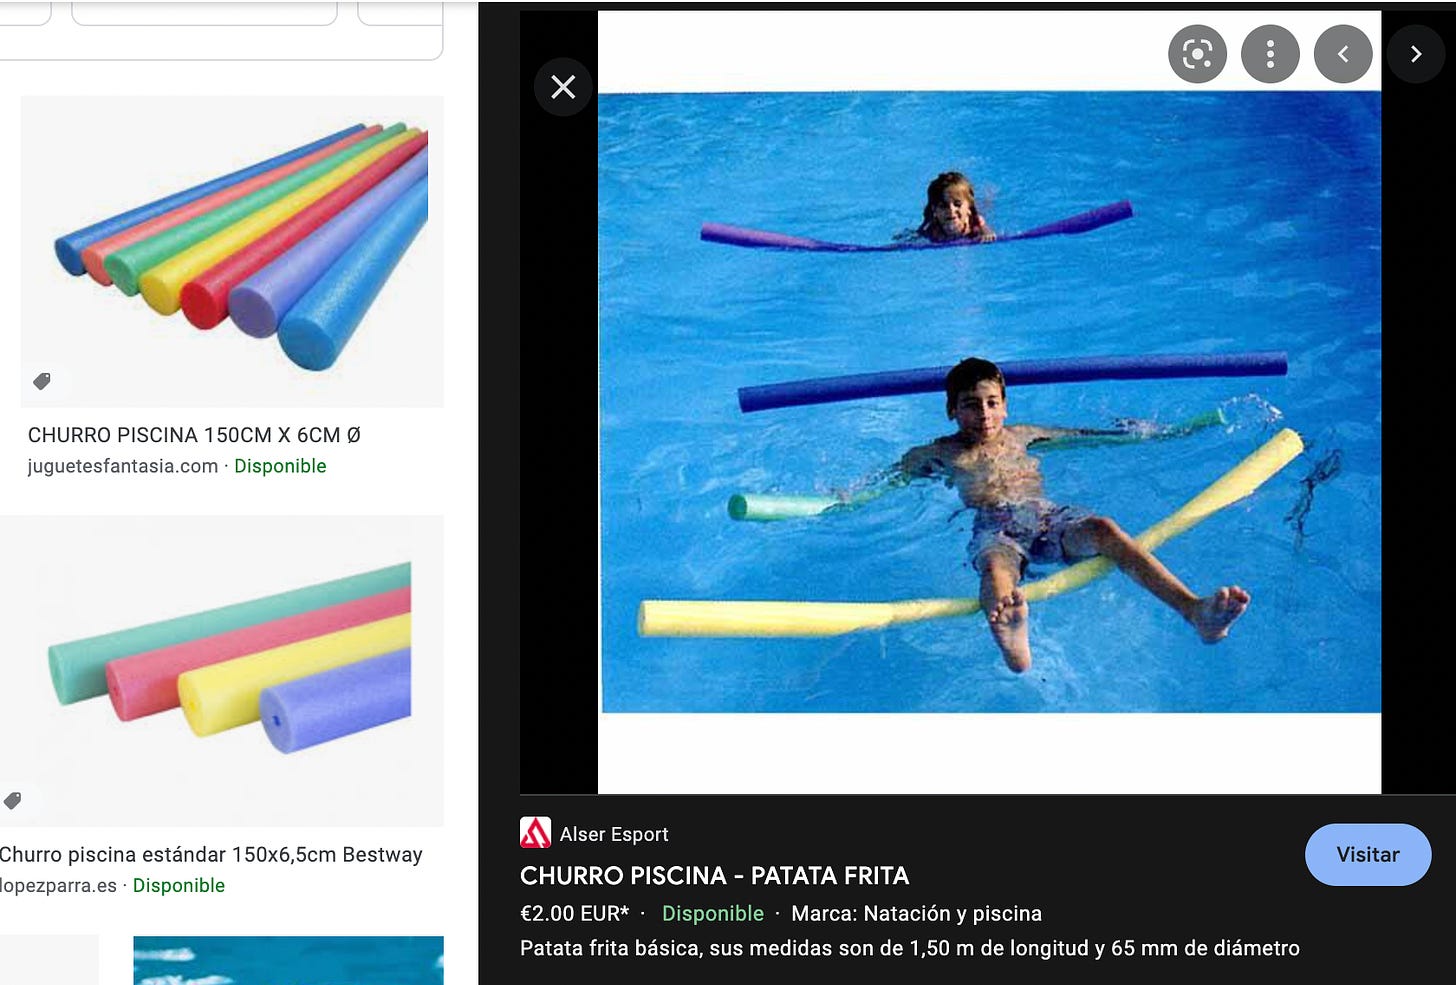 Churro piscina estándar 150x6,5cm Bestway